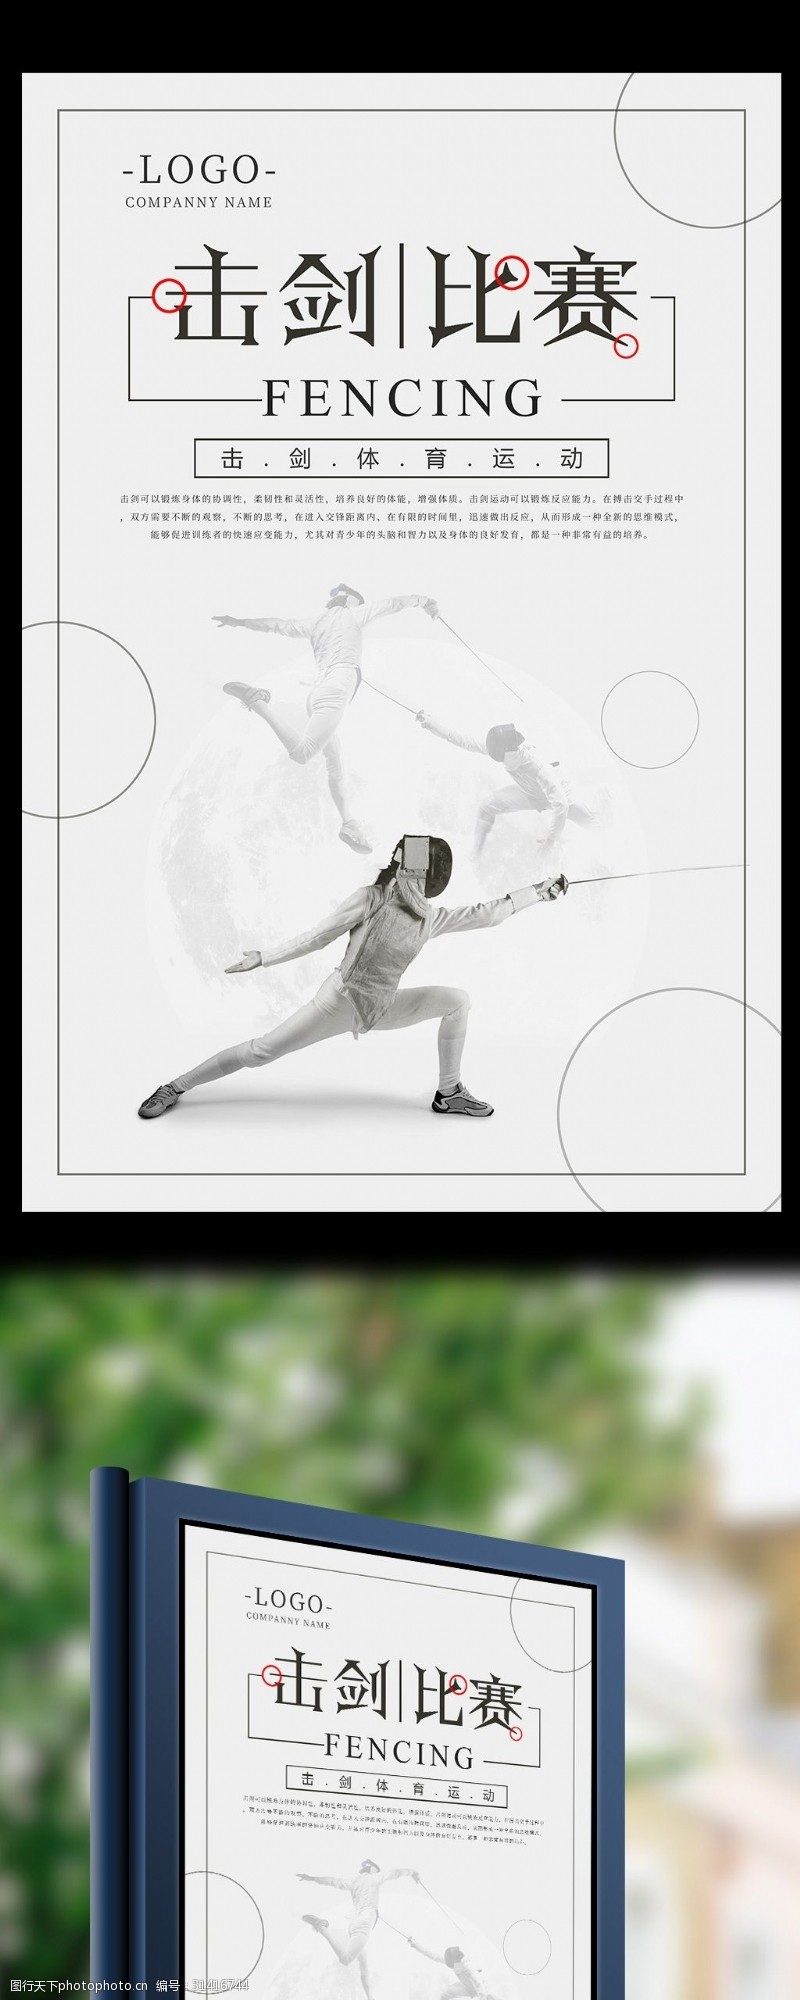 击剑运动极简击剑比赛体育运动海报设计